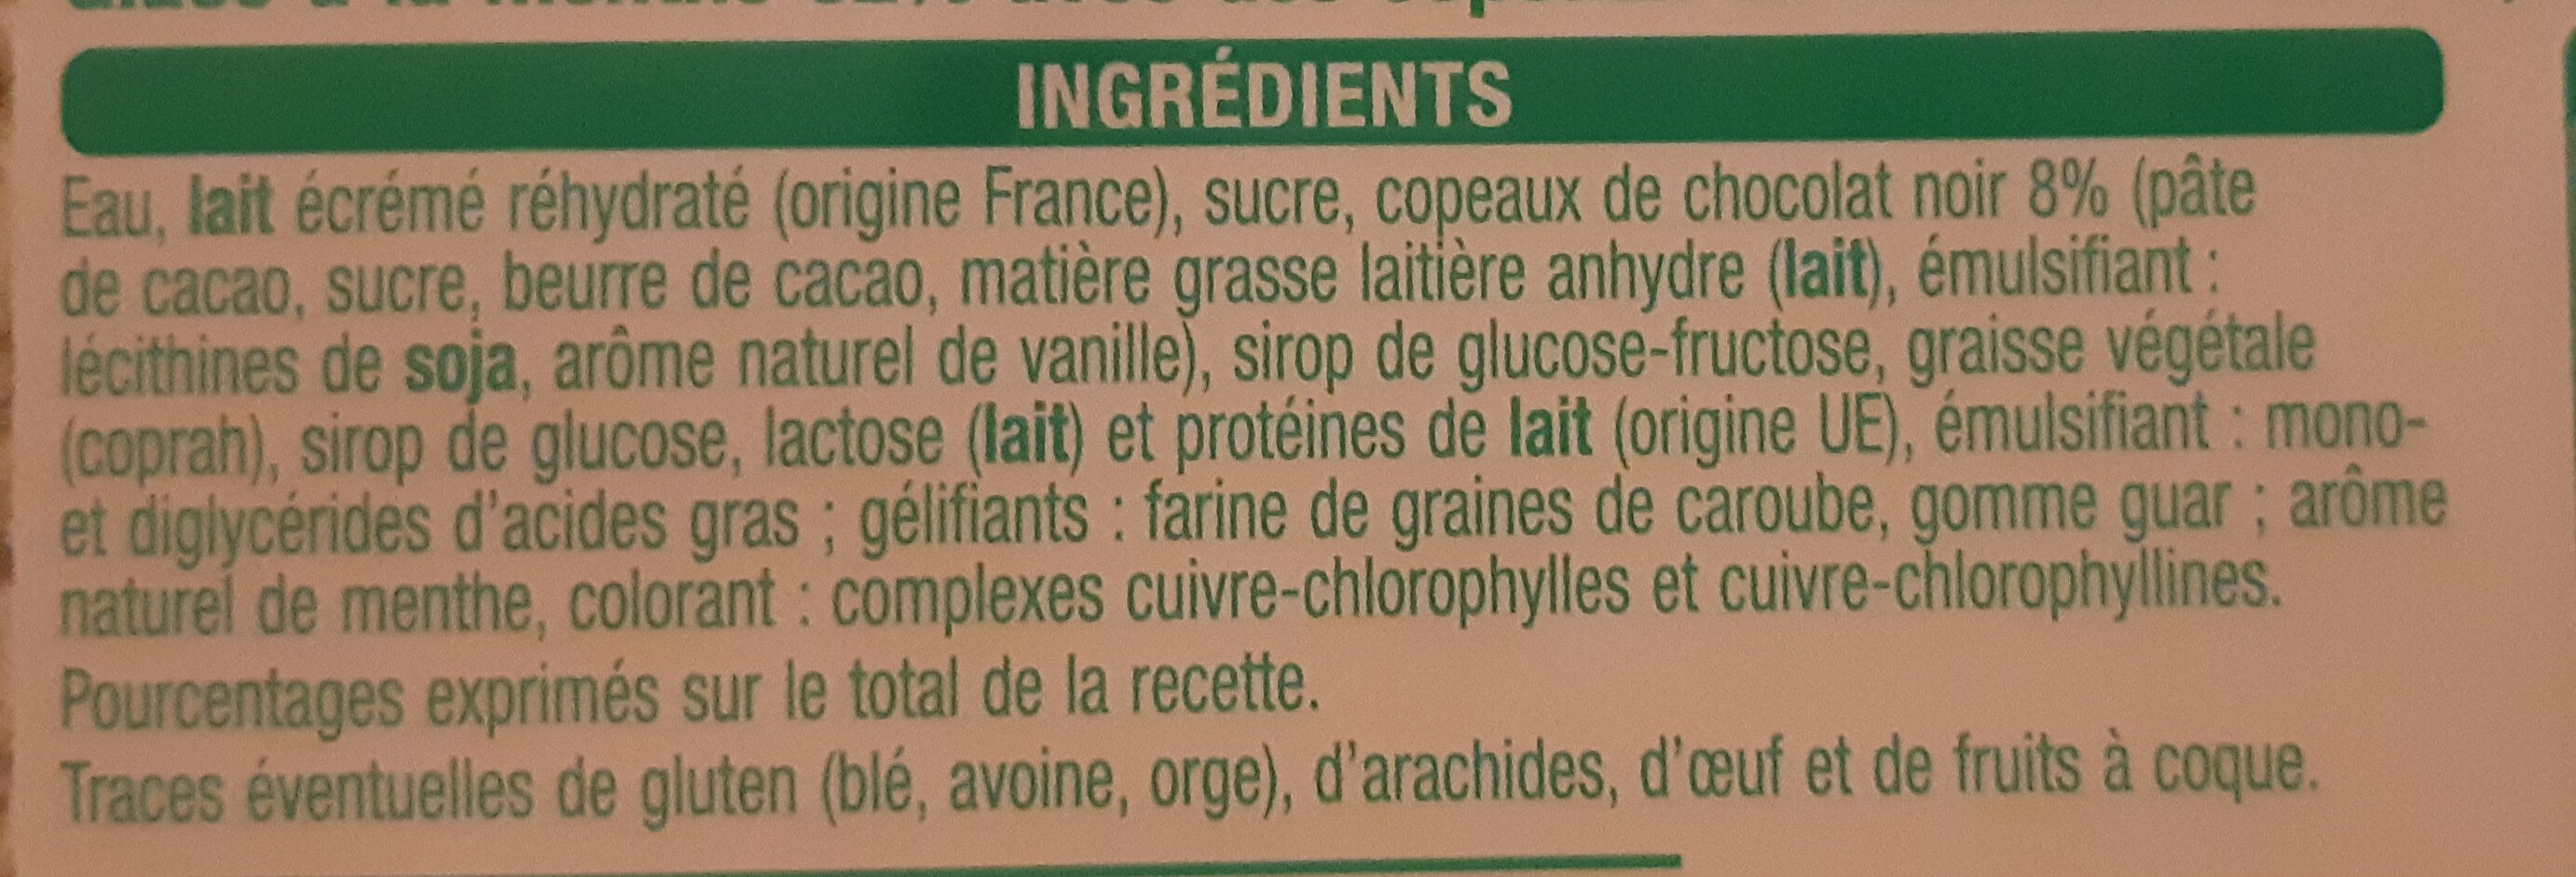 Glace menthe chocolat - Ingredienser - fr